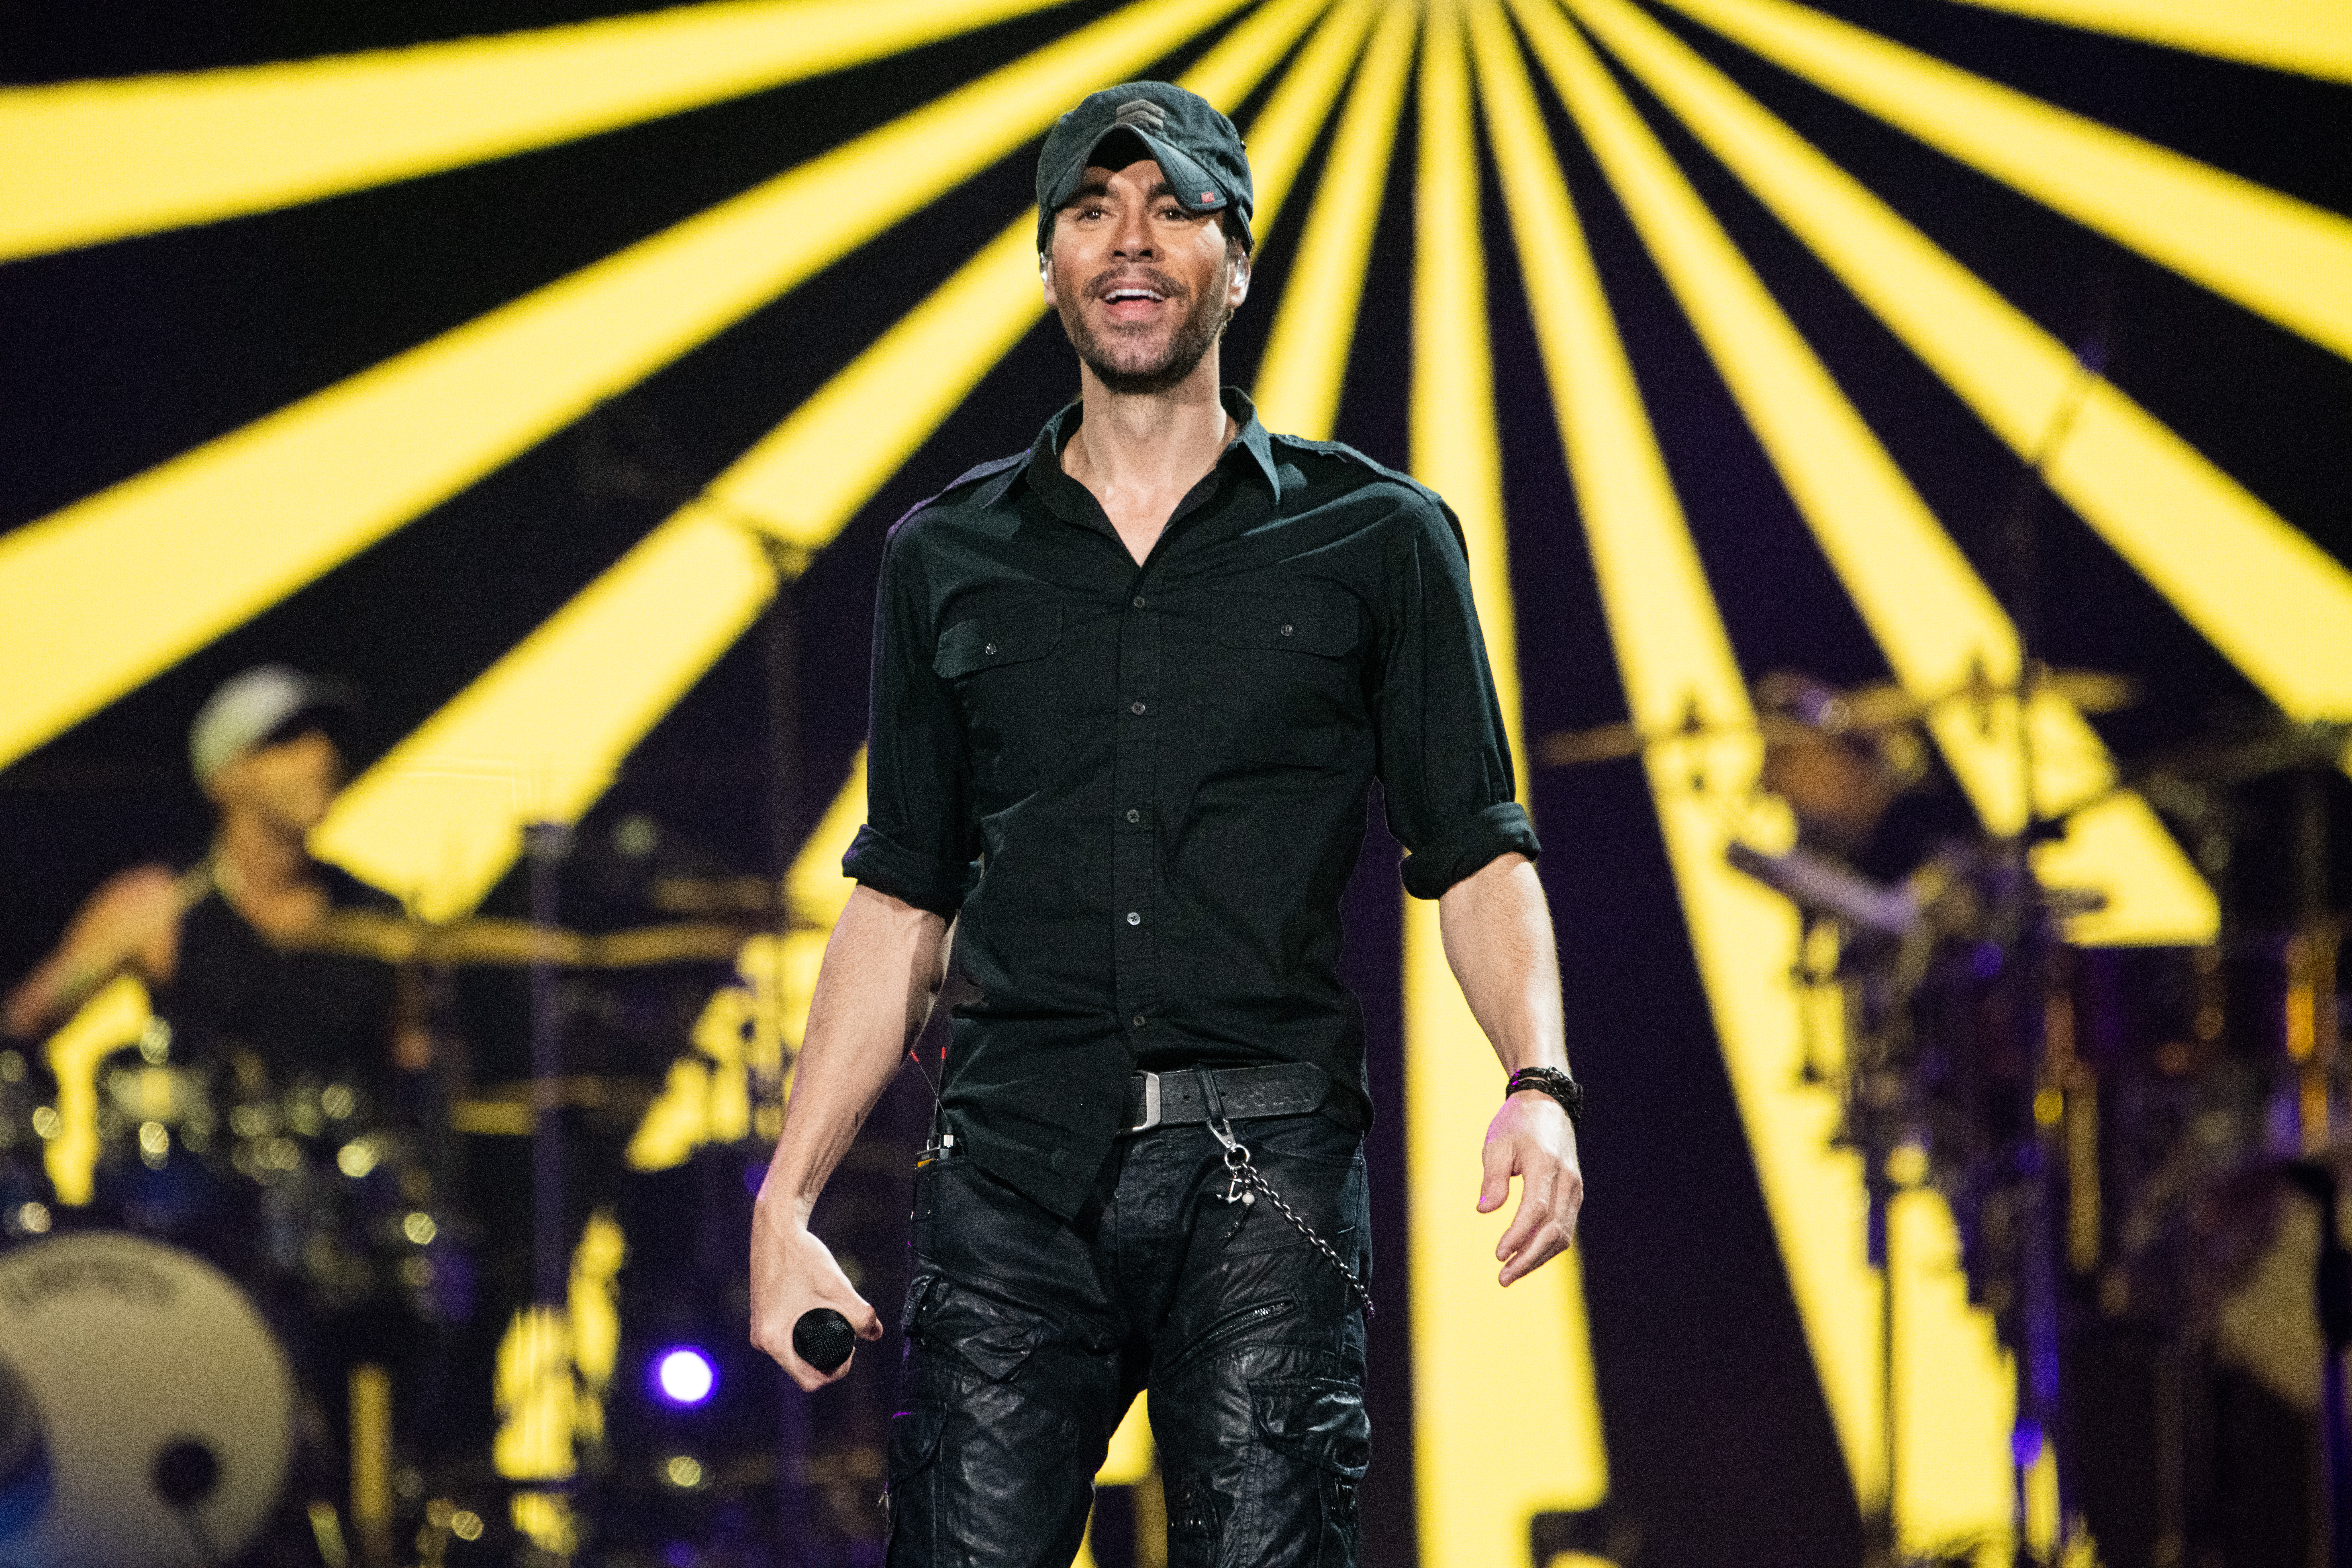 Enrique Iglesias sur scène au Staples Center le 19 novembre 2021 à Los Angeles, Californie. | Source : Getty Images